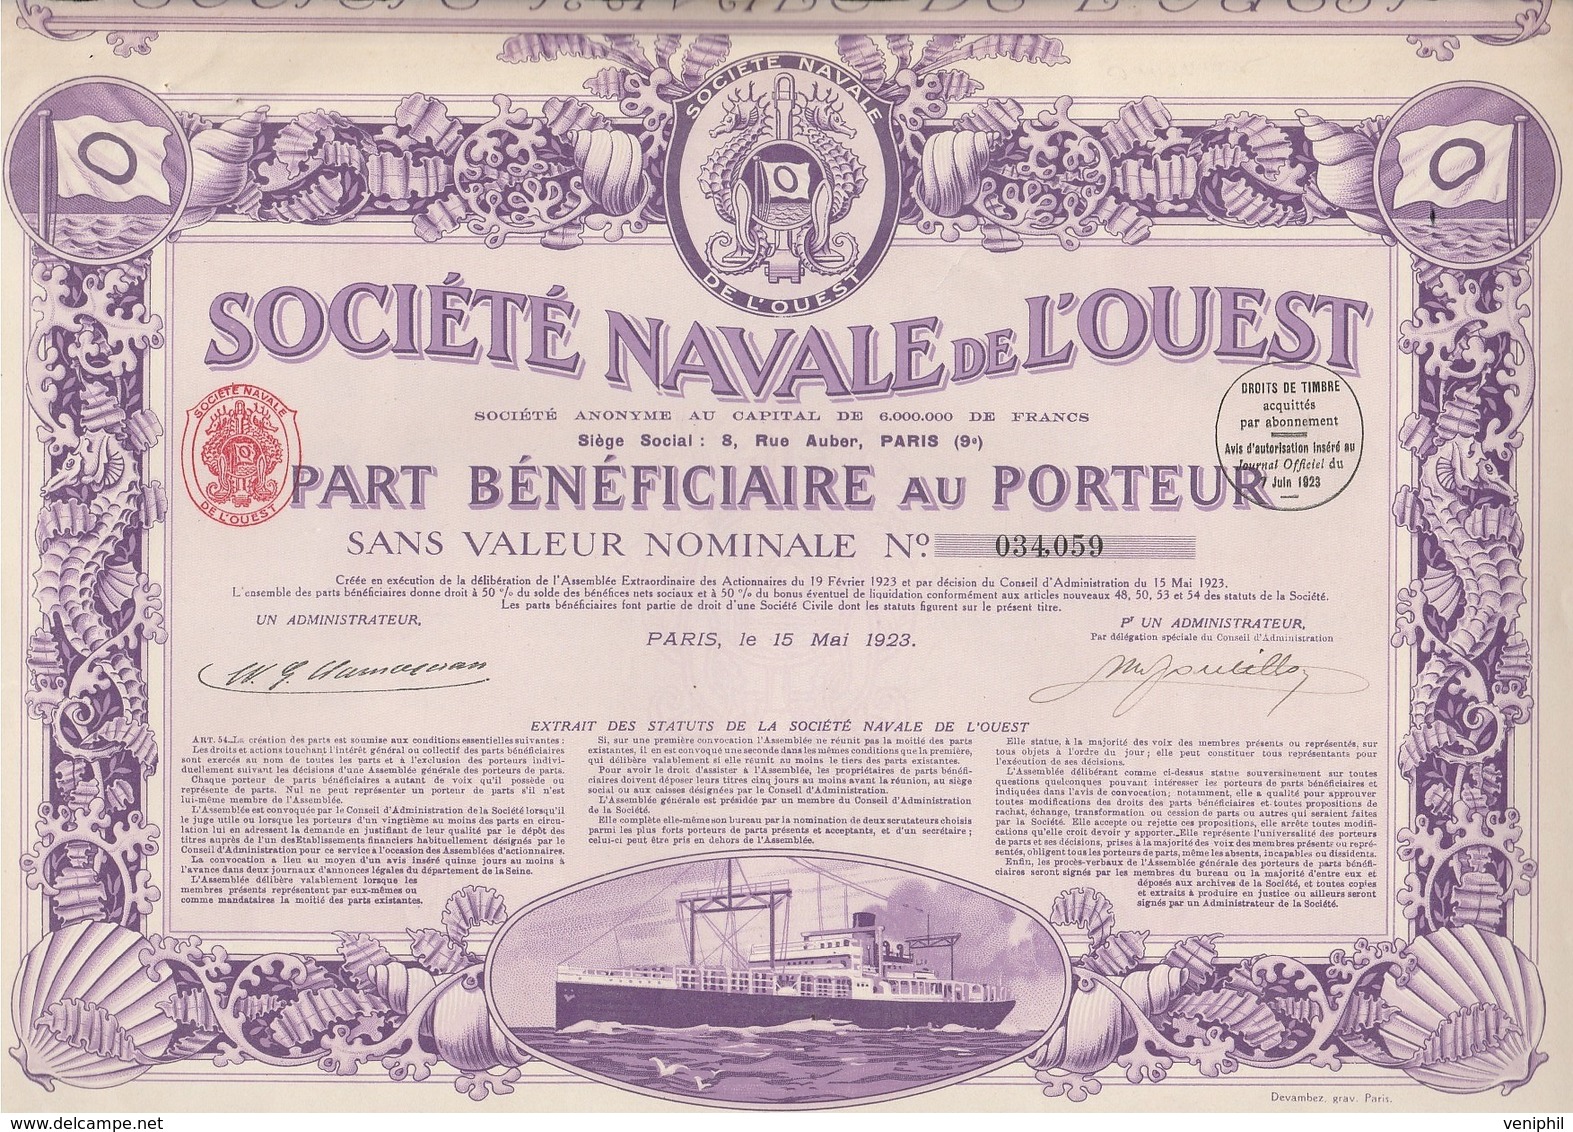 SOCIETE NAVALE DE L'OUEST -PART BENEFICIAIRE- ANNEE 1923 - COULEUR VIOLETTE - Schiffahrt